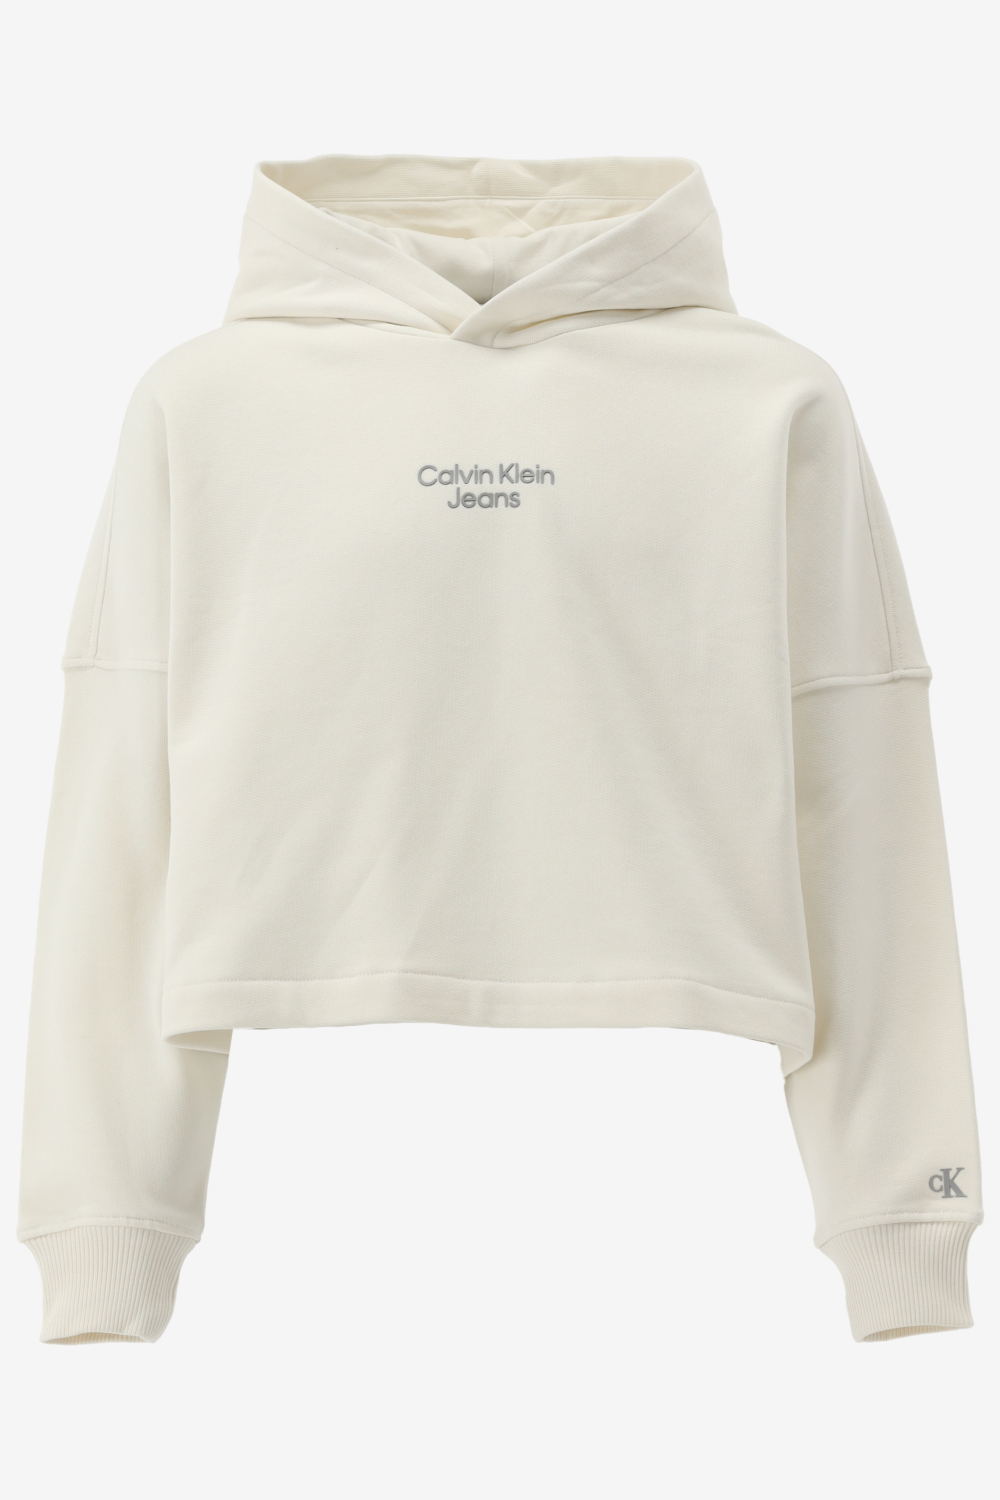 Calvin klein hoodie sport stack logo hod maat 152/12J